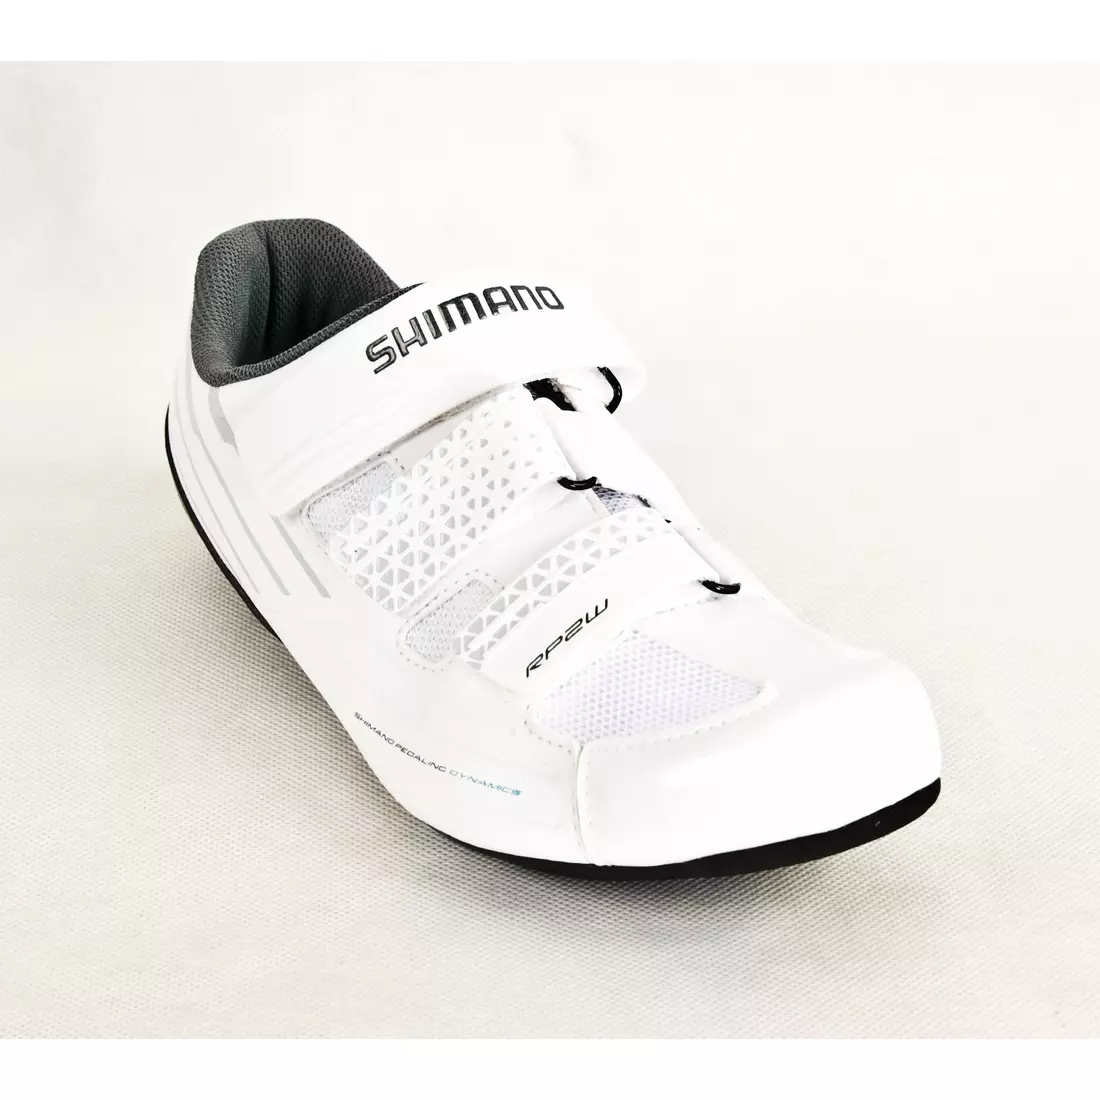 SHIMANO SH-RP200WW - dámská silniční cyklistická obuv, barva: Bílá